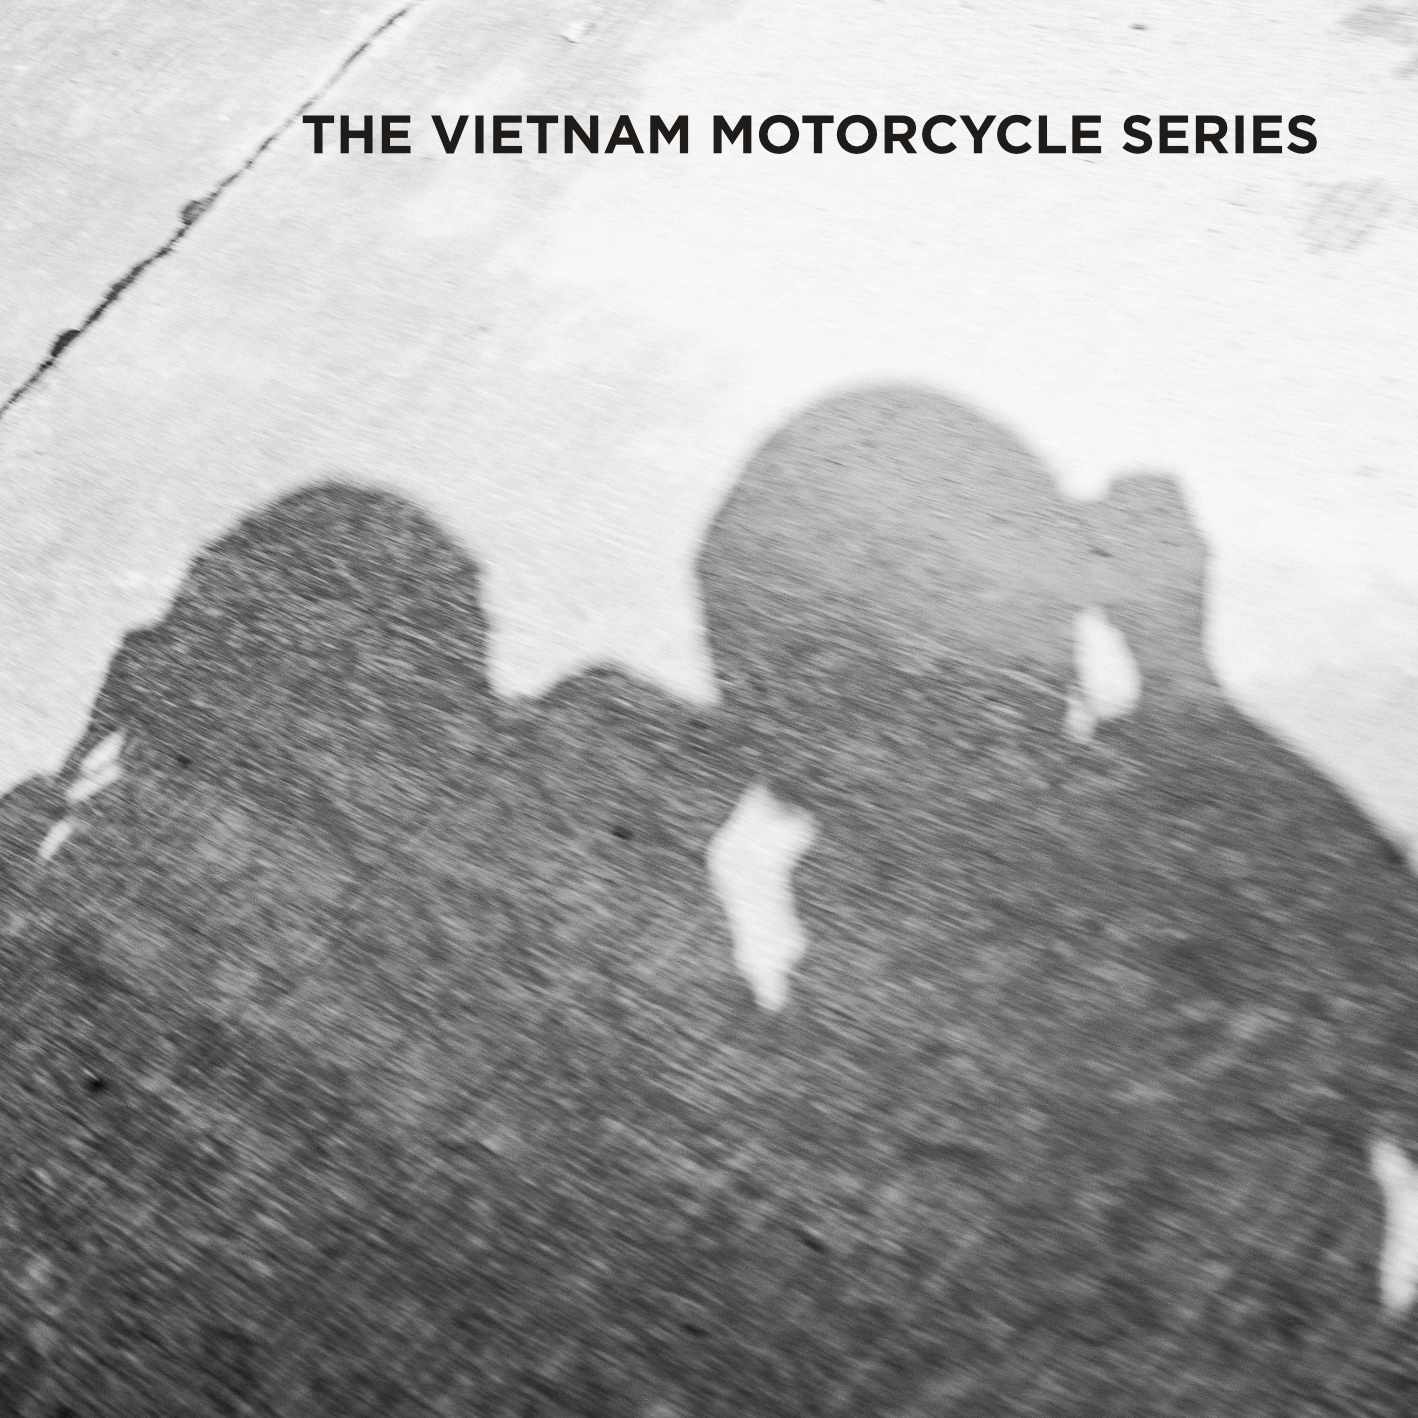 The Vietnam Motorcycle Series